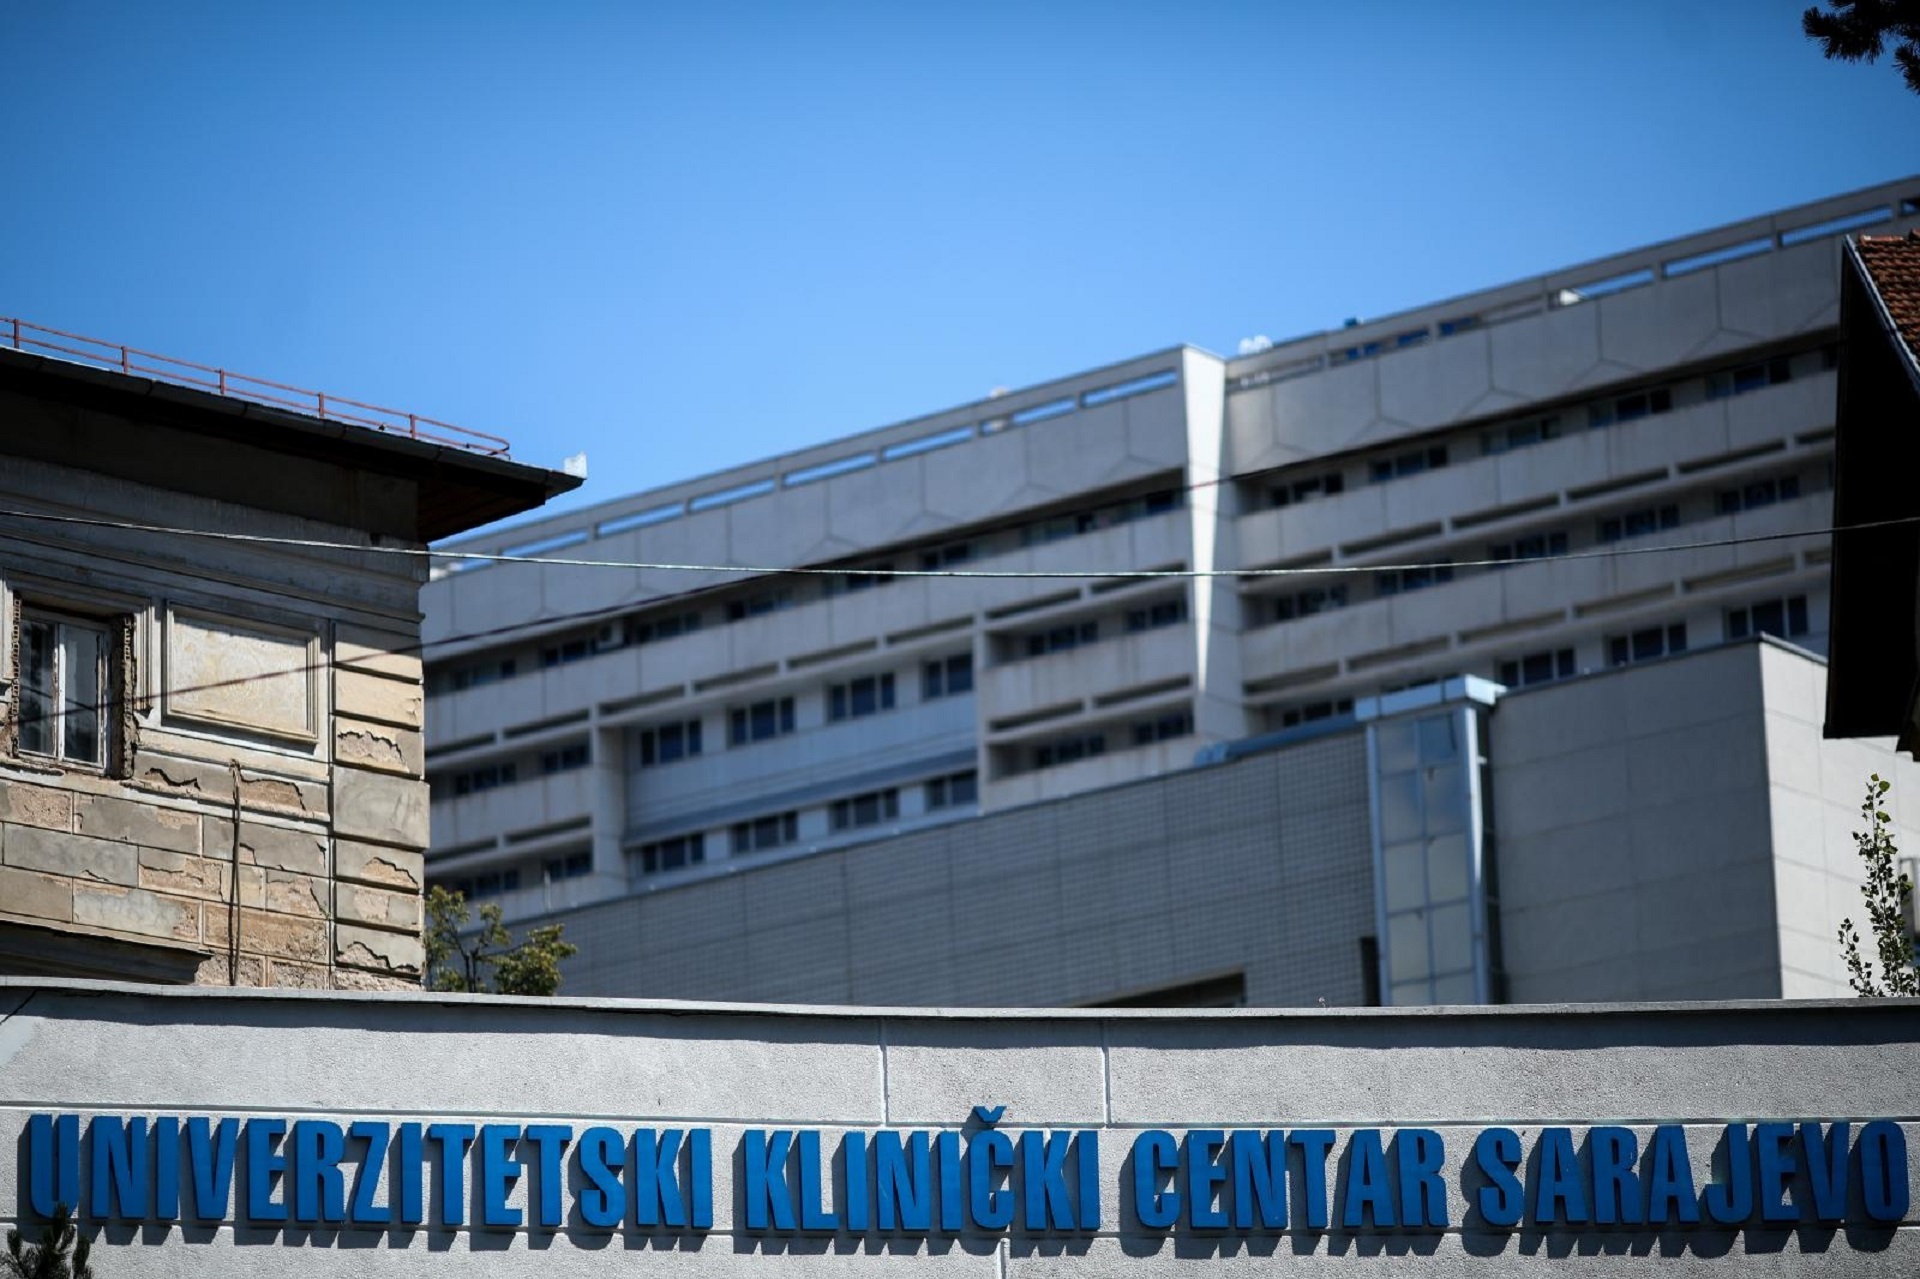 20.07.2020., Sarajevo, Bosna i Hercegovina - Klinicki centar Univerziteta u Sarajevu.
Photo: Armin Durgut/PIXSELL